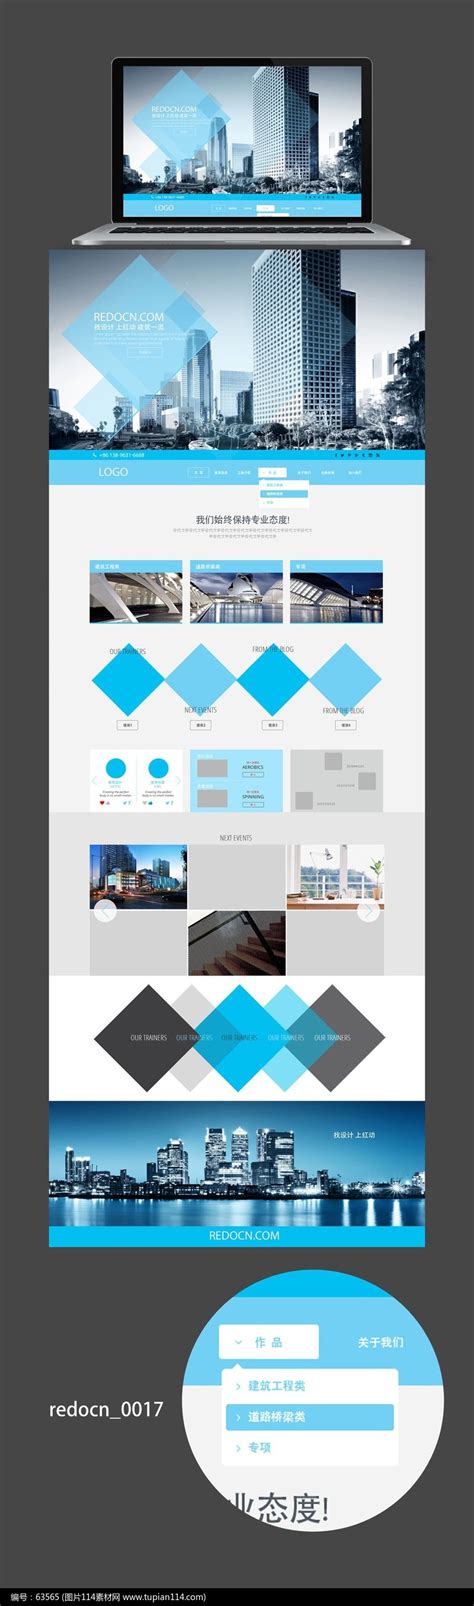 15个最佳建筑网站设计灵感-上海网站策划设计建设公司-尚略